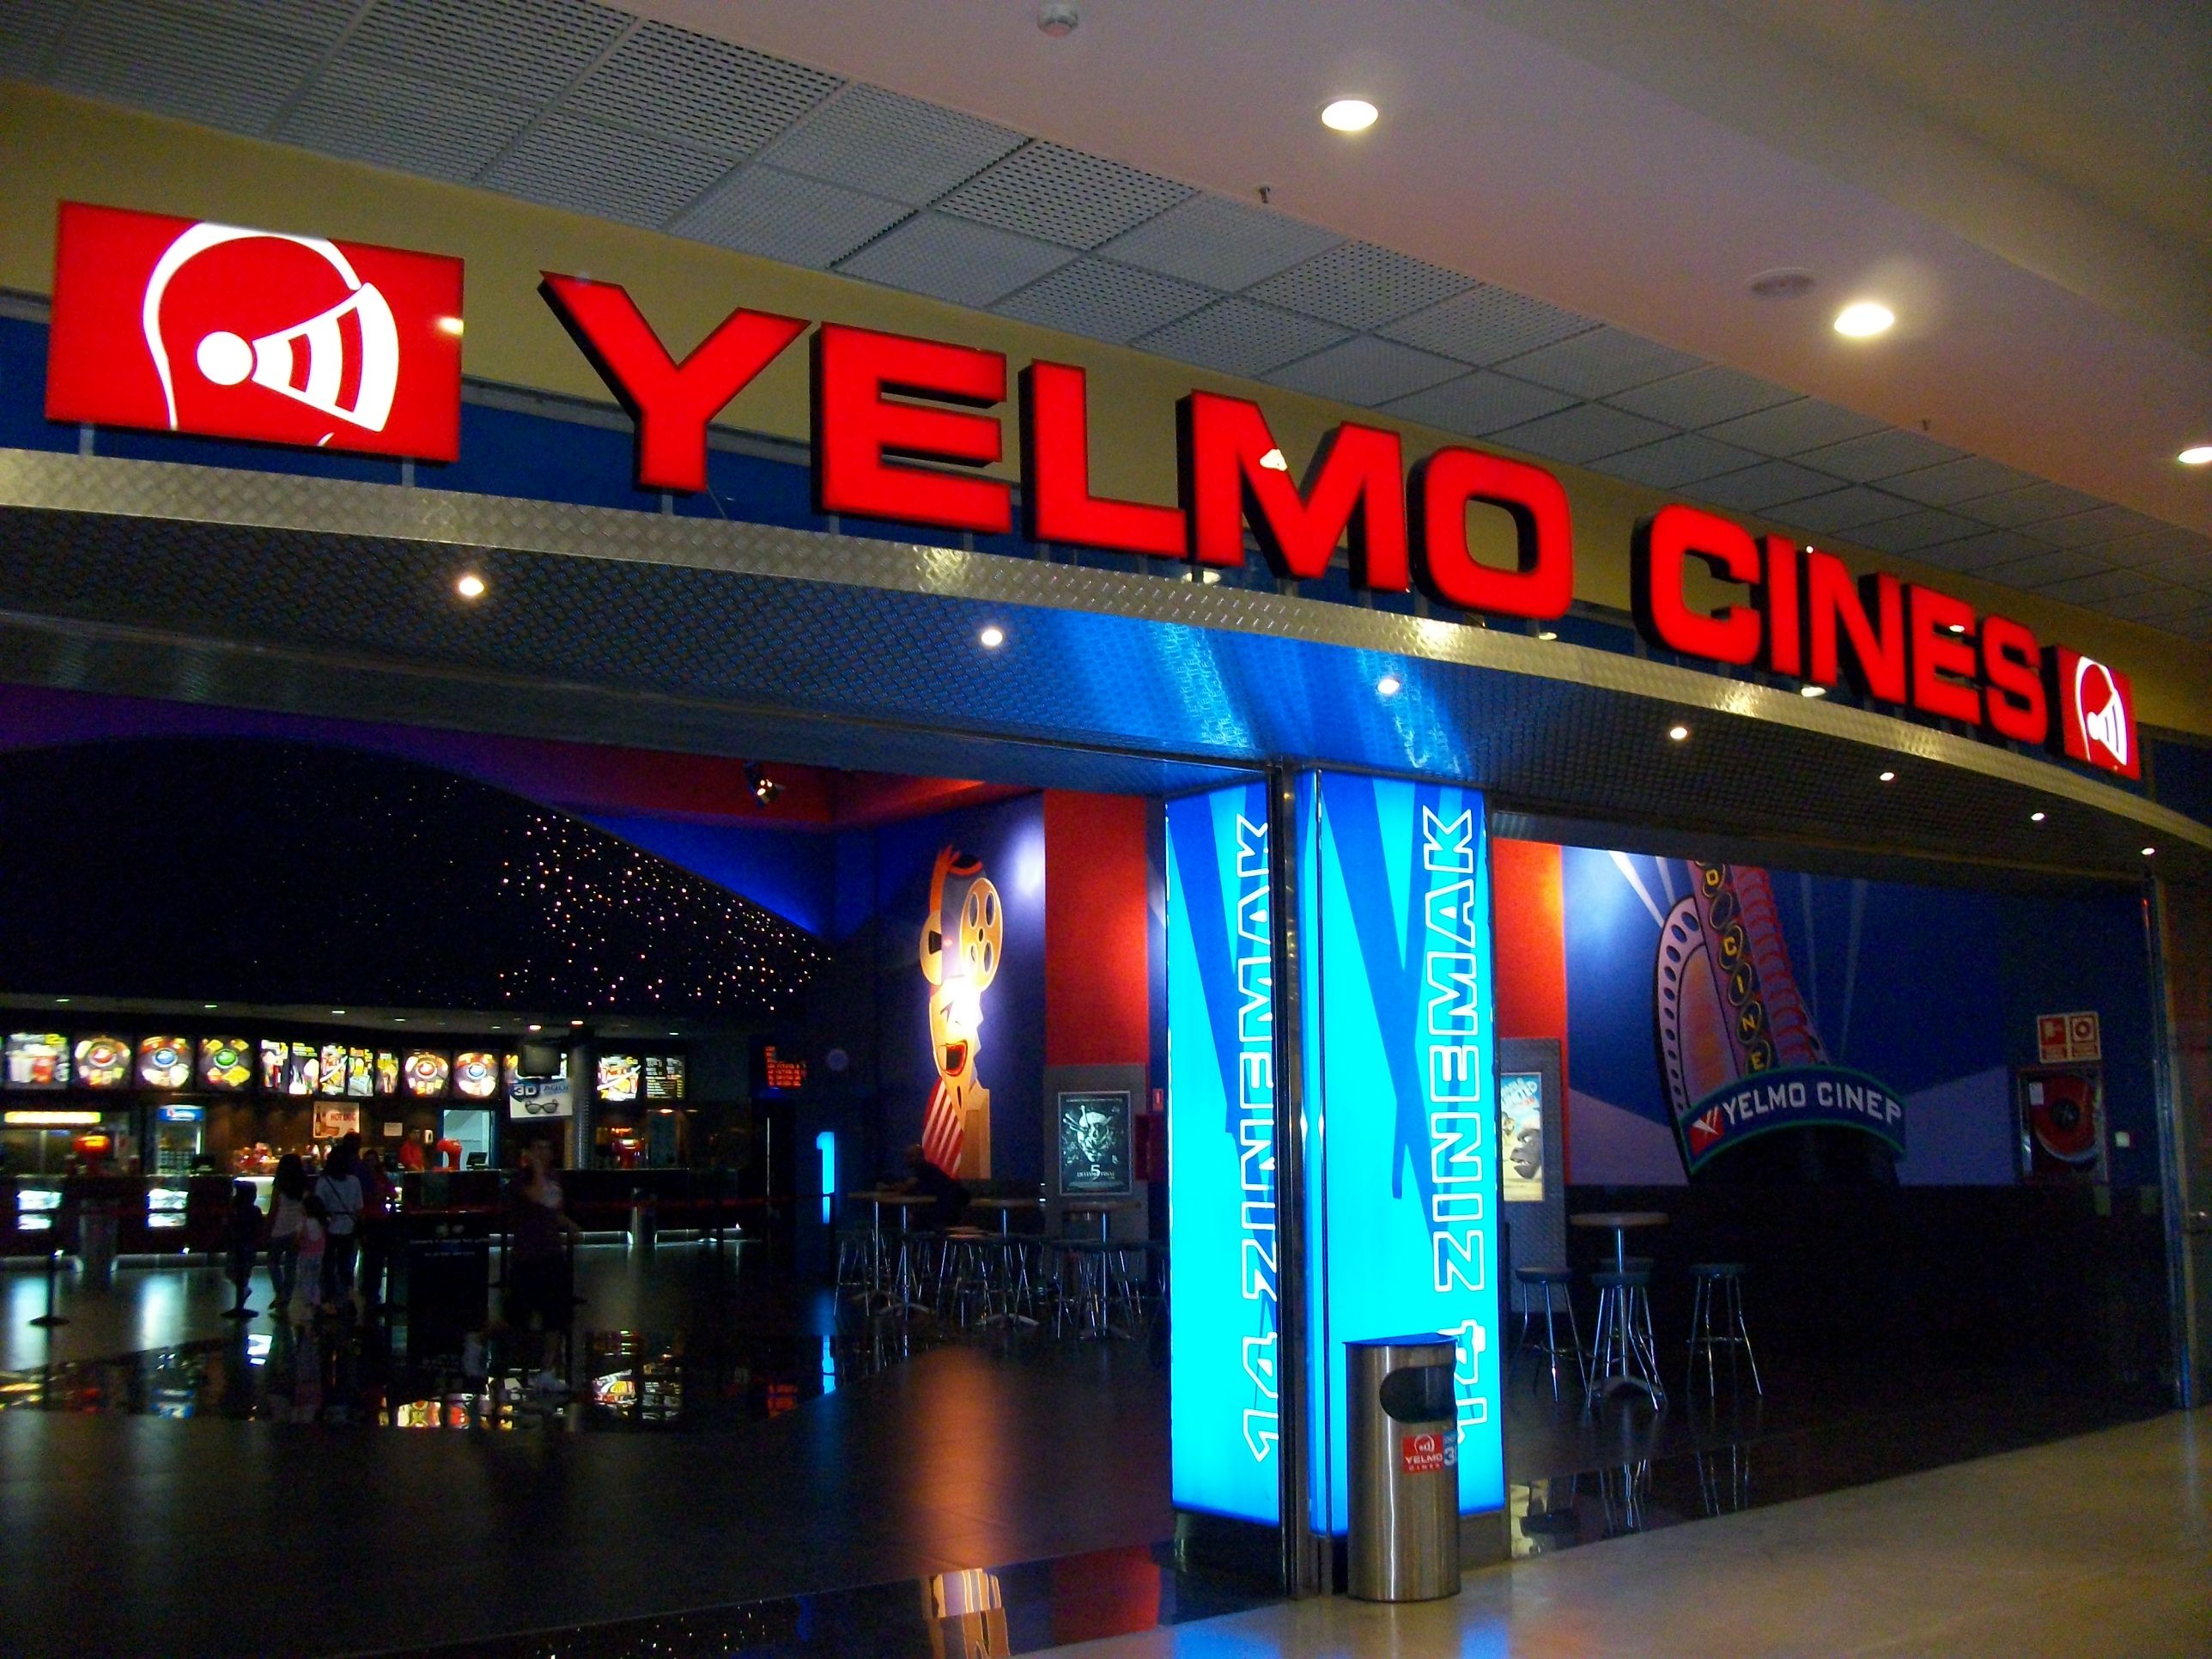 Una imagen de los Cines Yelmo de Jerez.